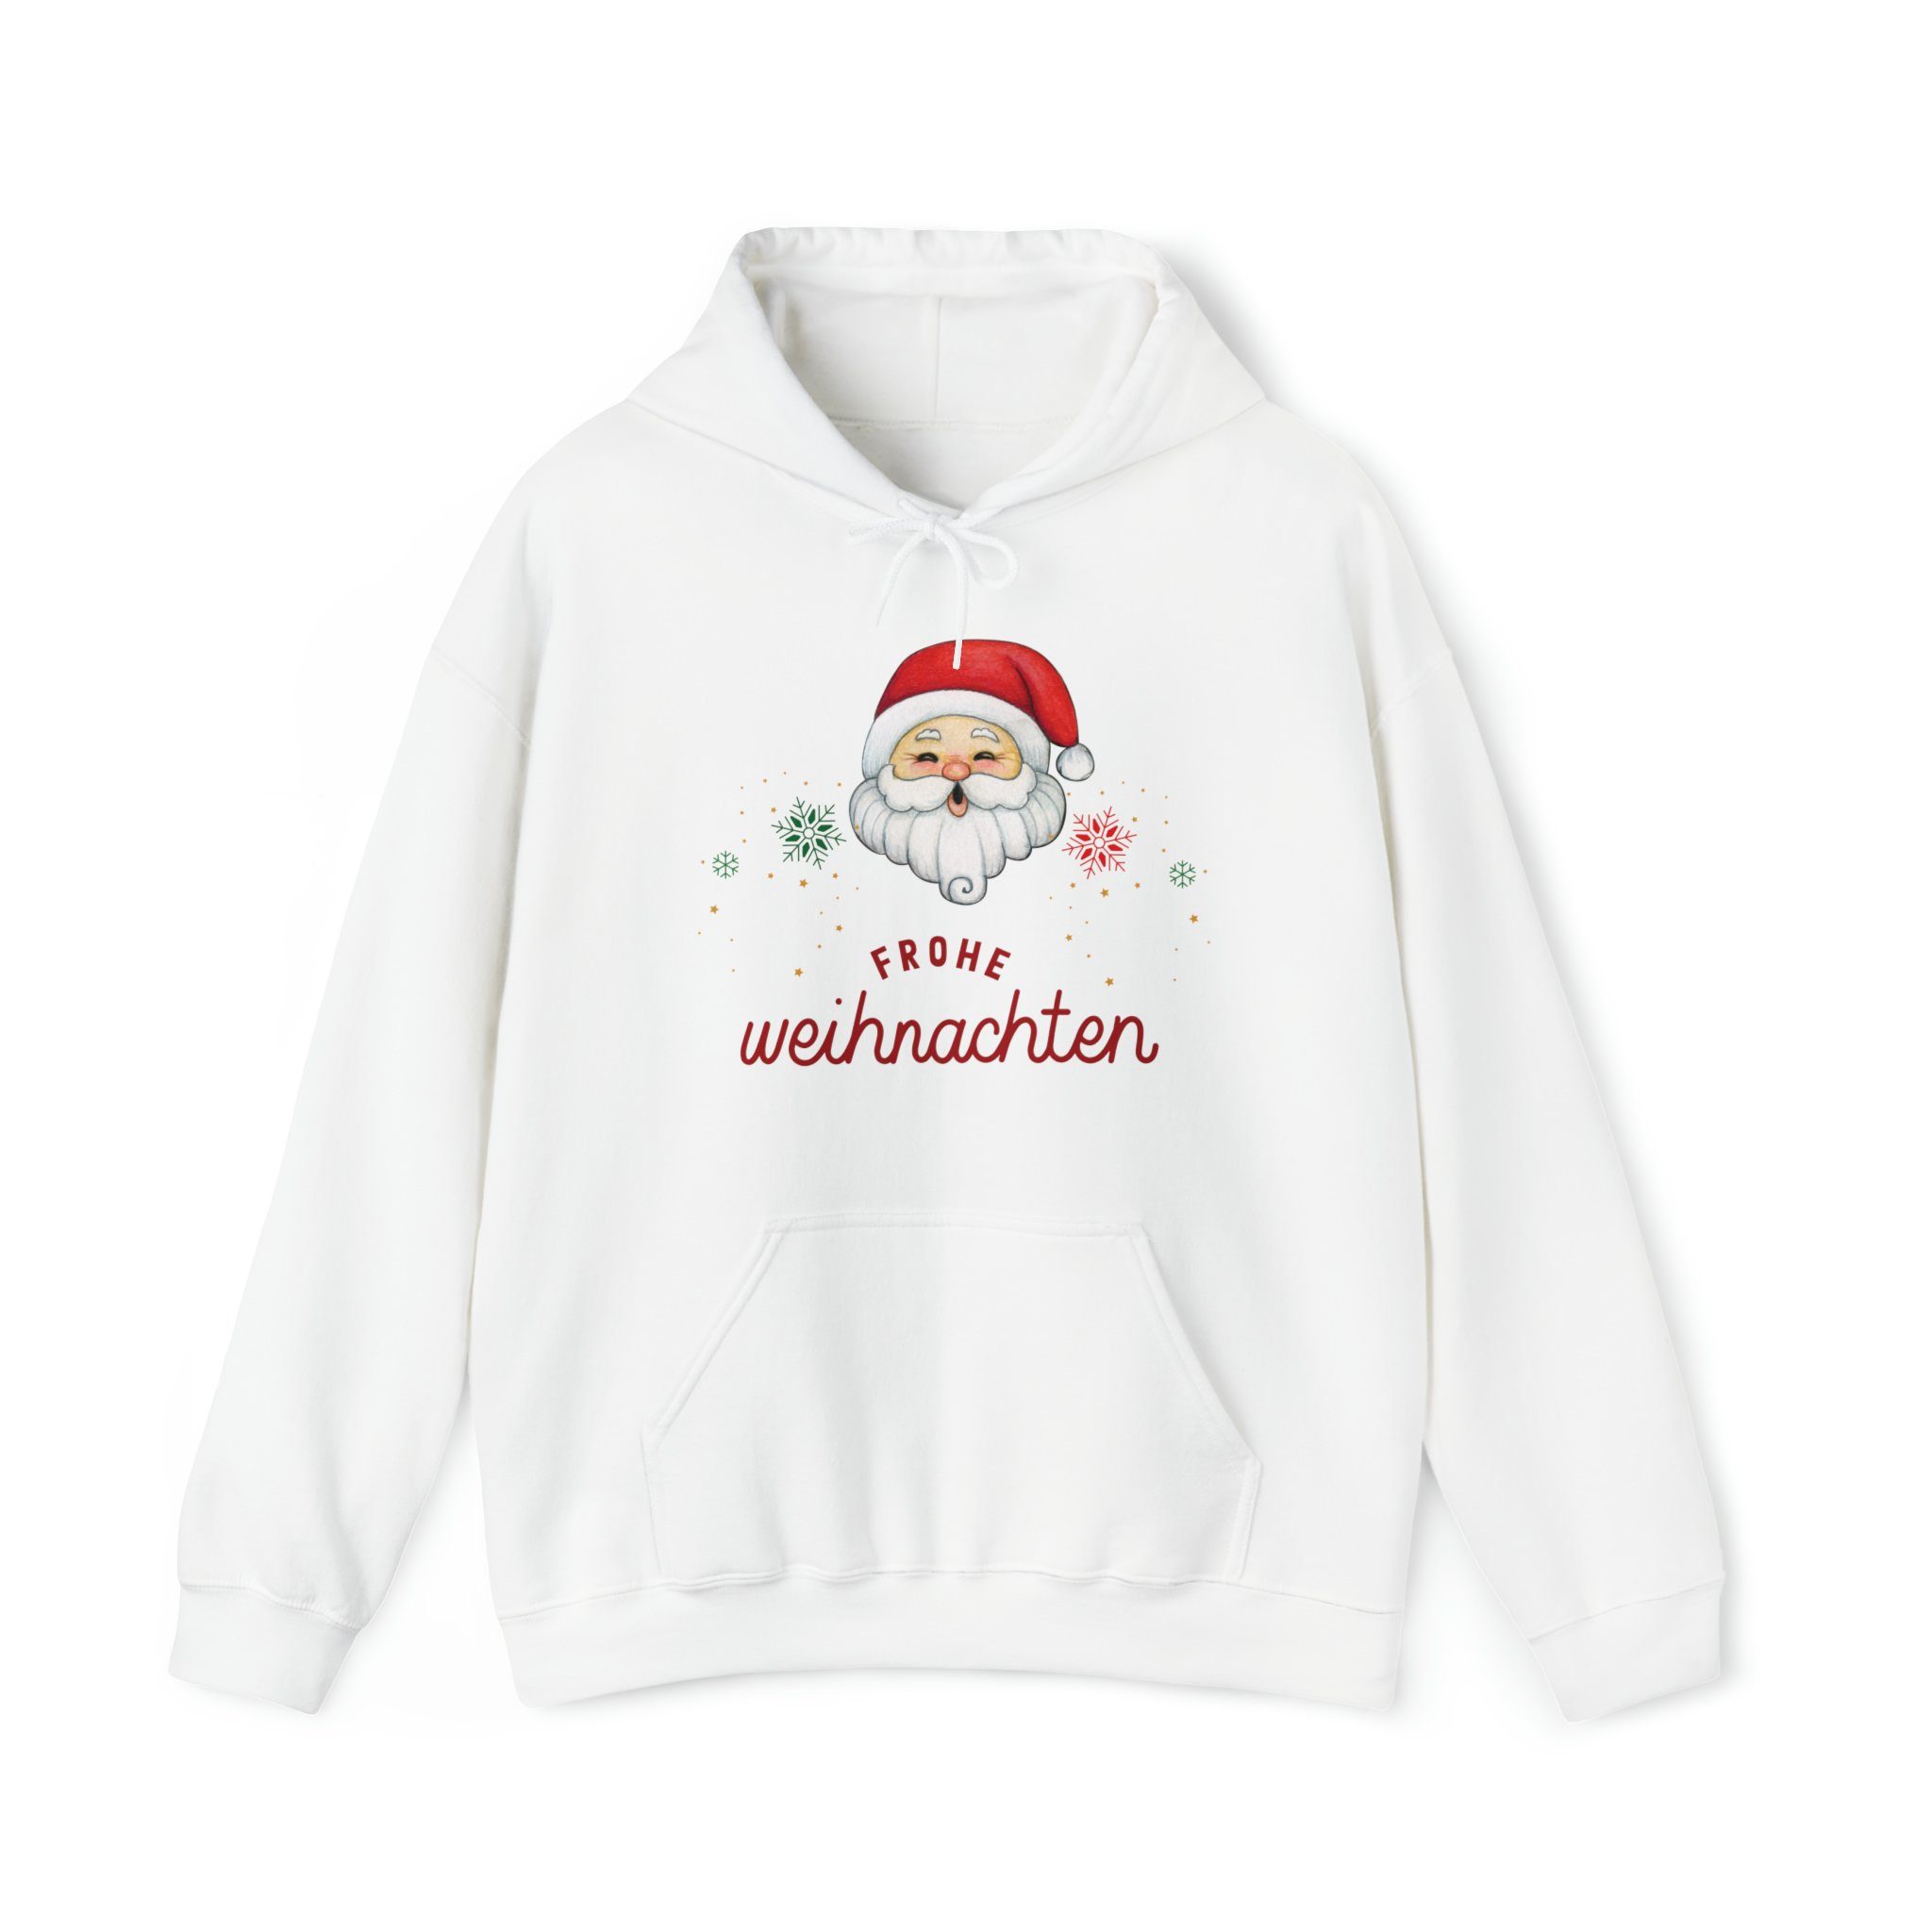 Quality Elegance Weihnachtssweatshirt Santa Merry Christmas Hoodie, Men Women Christmas Sweatshirt White